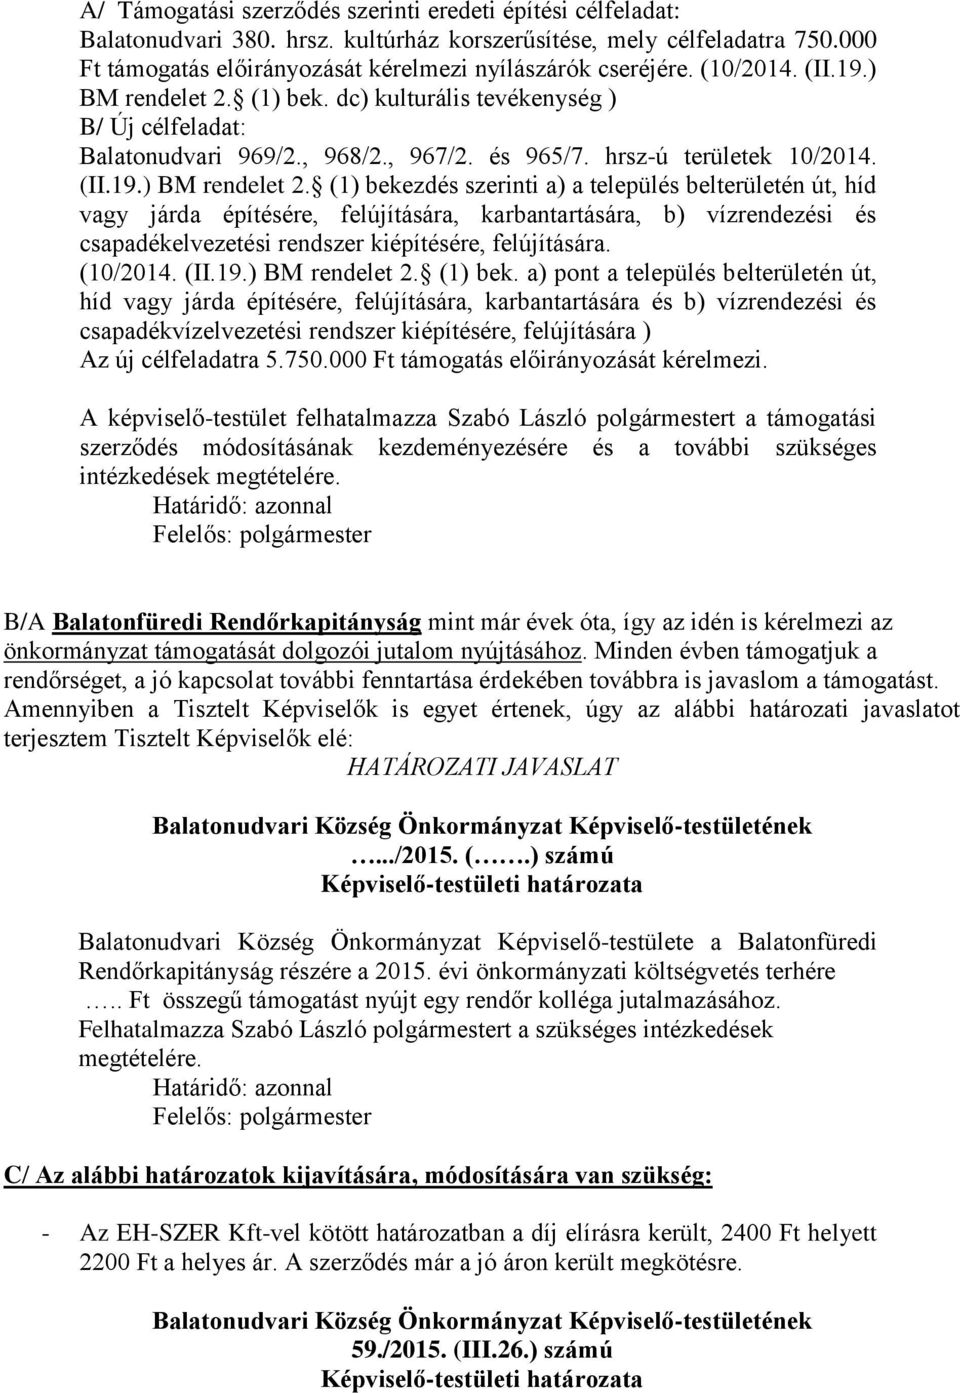 (1) bek. dc) kulturális tevékenység ) B/ Új célfeladat: Balatonudvari 969/2., 968/2., 967/2. és 965/7. hrsz-ú területek 10/2014. (II.19.) BM rendelet 2.